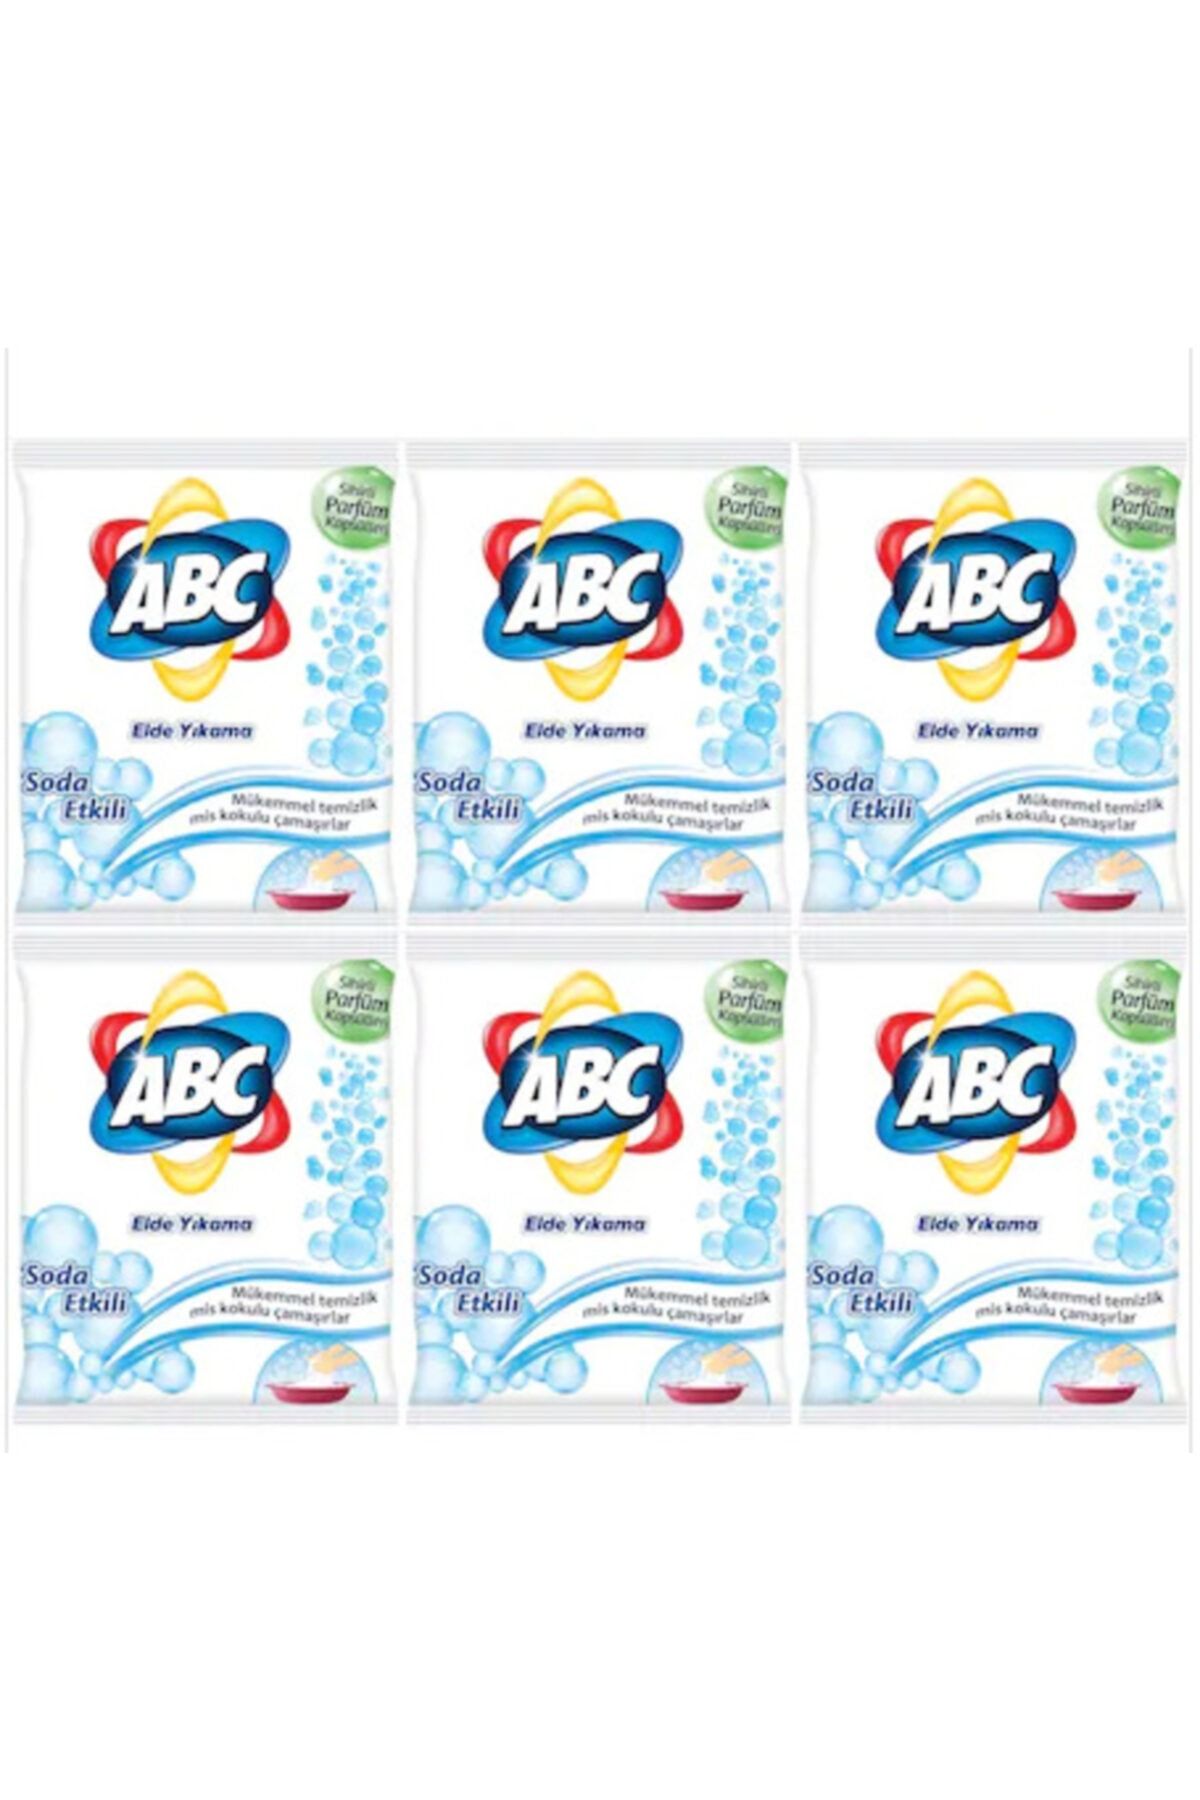 ABC Elde Yıkama Toz Çamaşır Deterjanı Soda Etkili 6 X 600 g